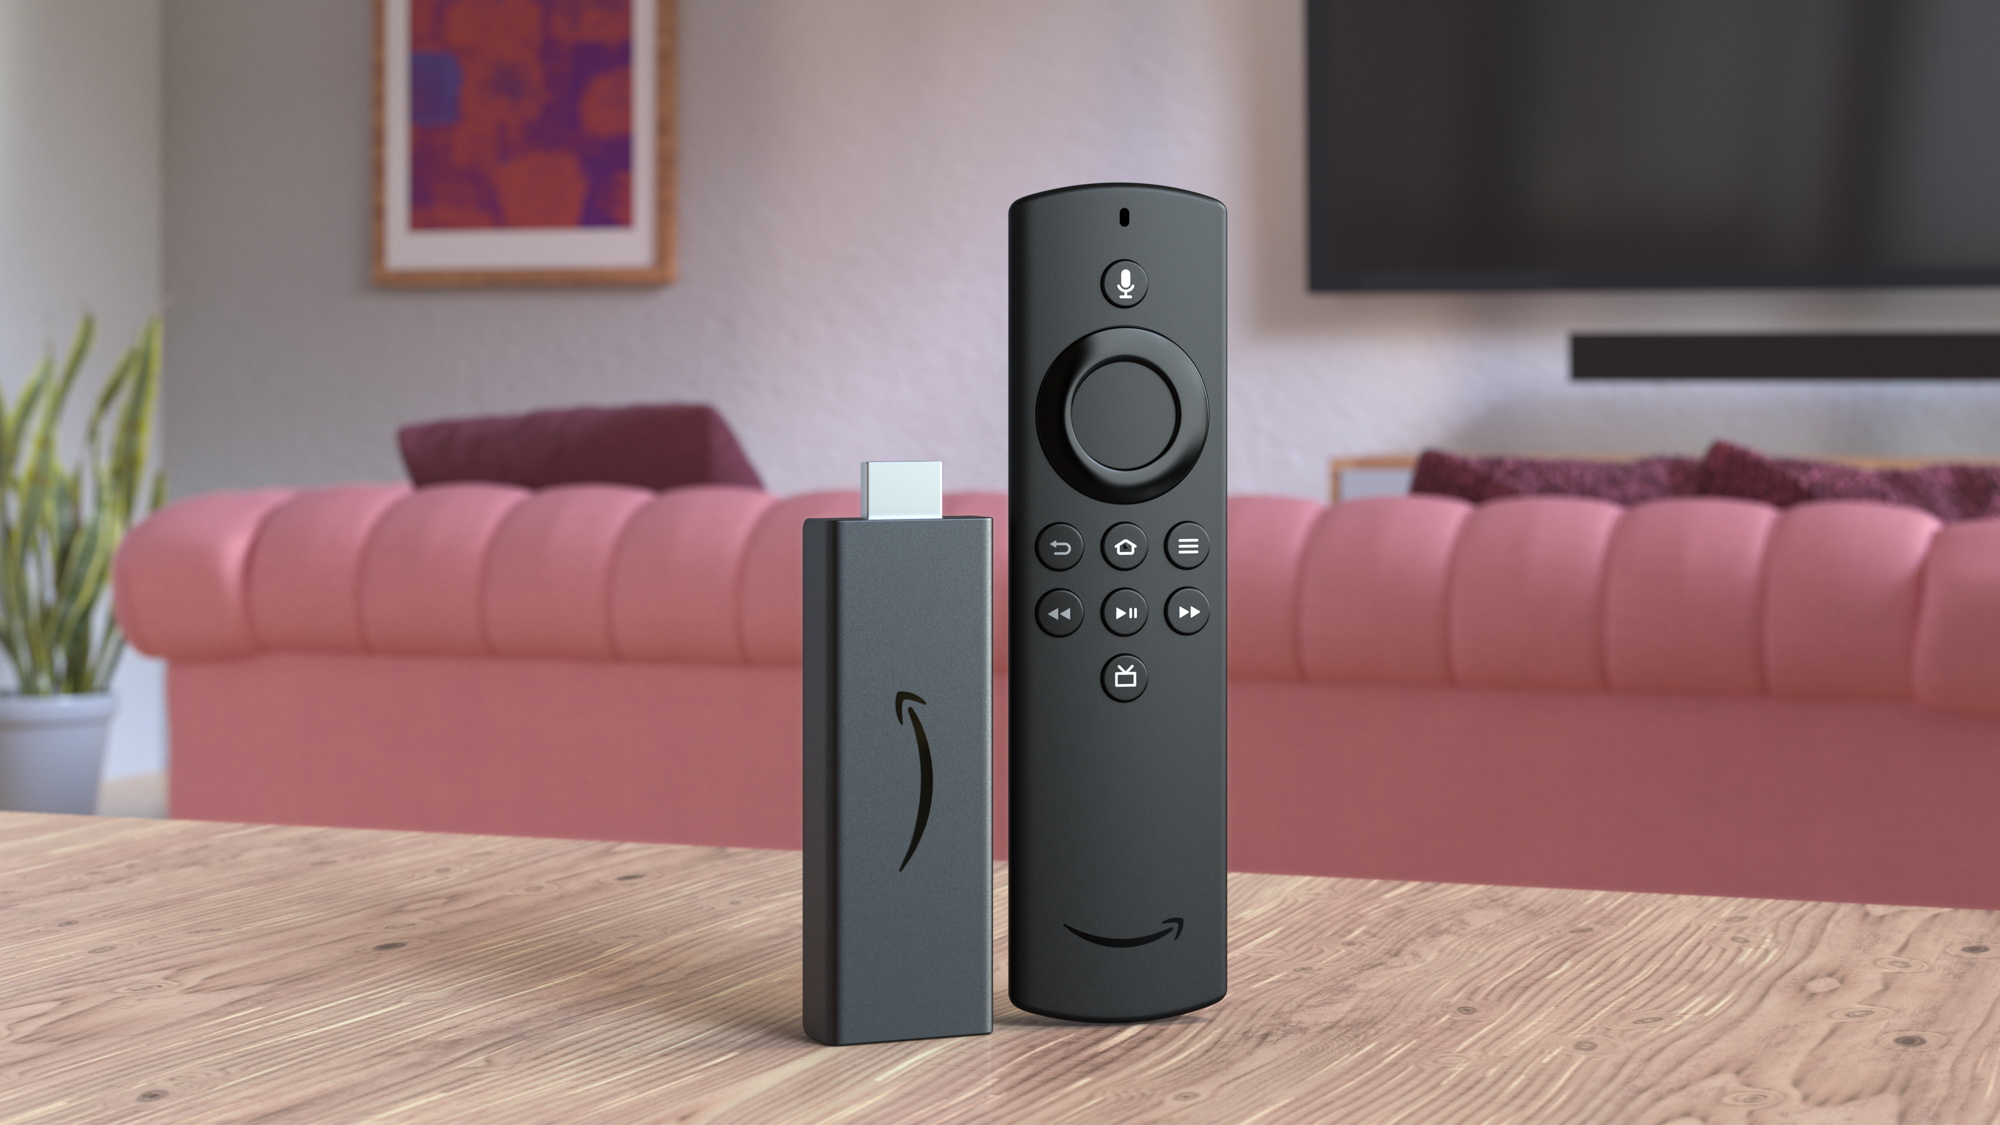 Fire TV Stick Lite(Gen 2) With Alexa Voice Remote Lite - Black